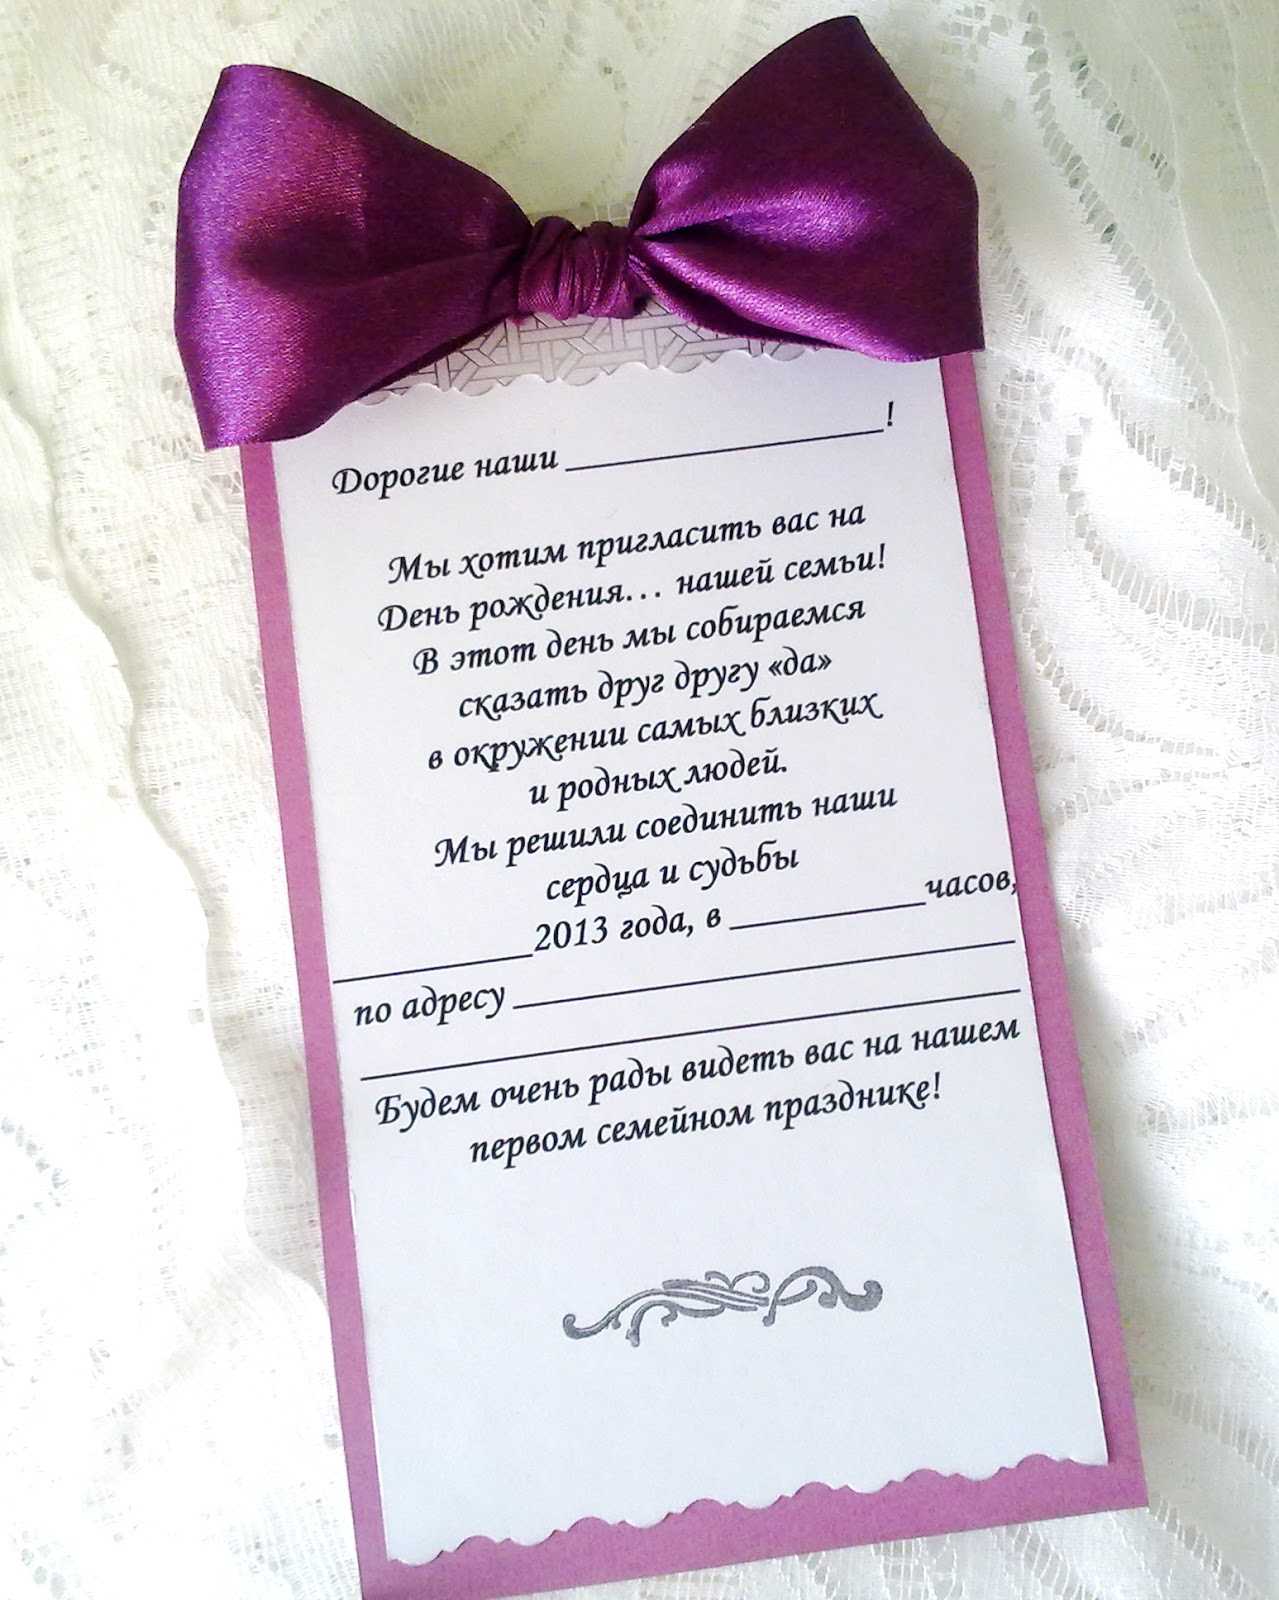 Как оригинально подарить деньги: 115 вариантов подарков из денег, как вручить и поздавить - podarkovoz.ru